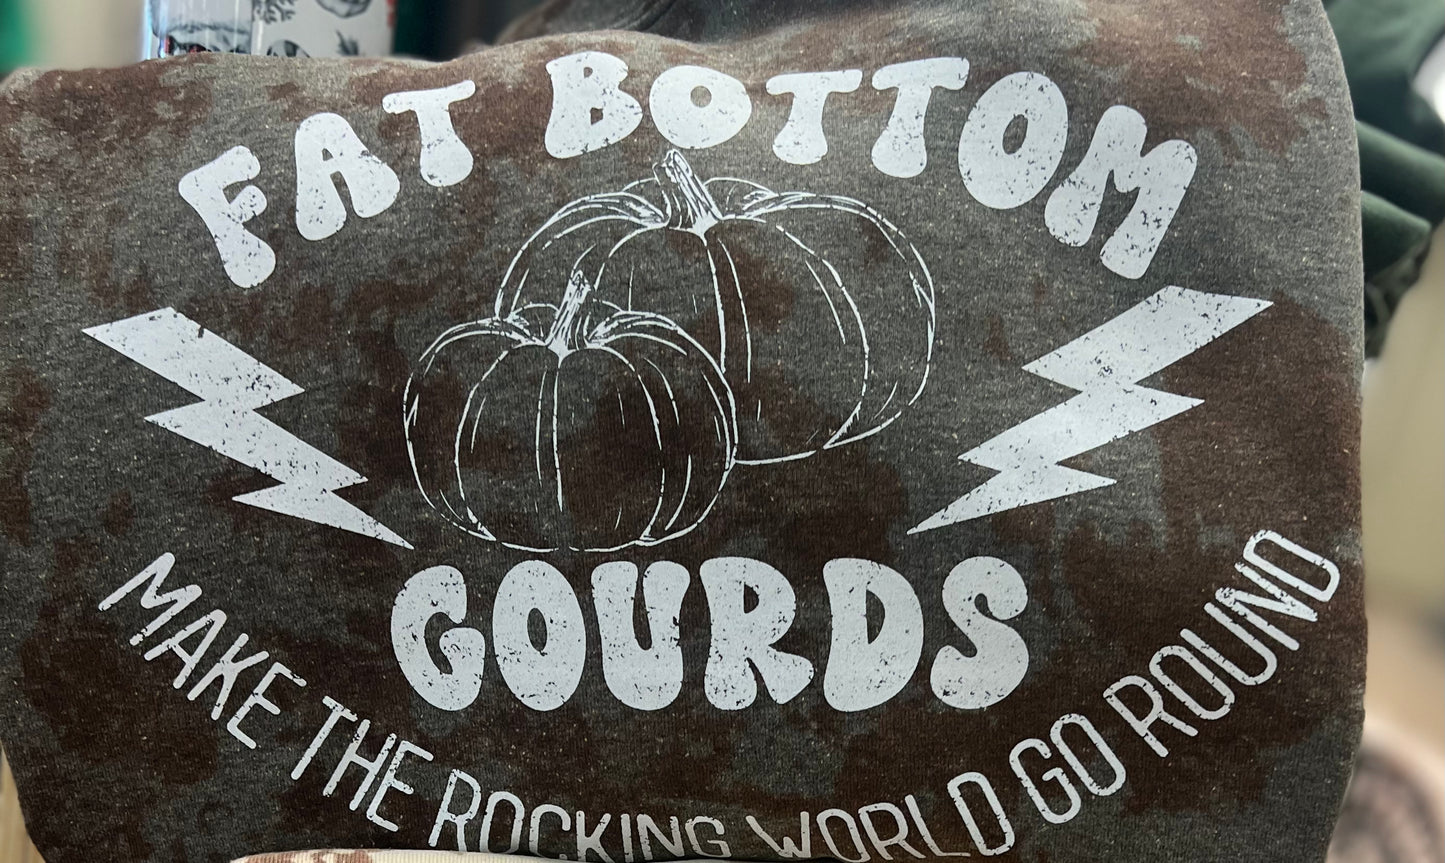 Fatbottom gourds